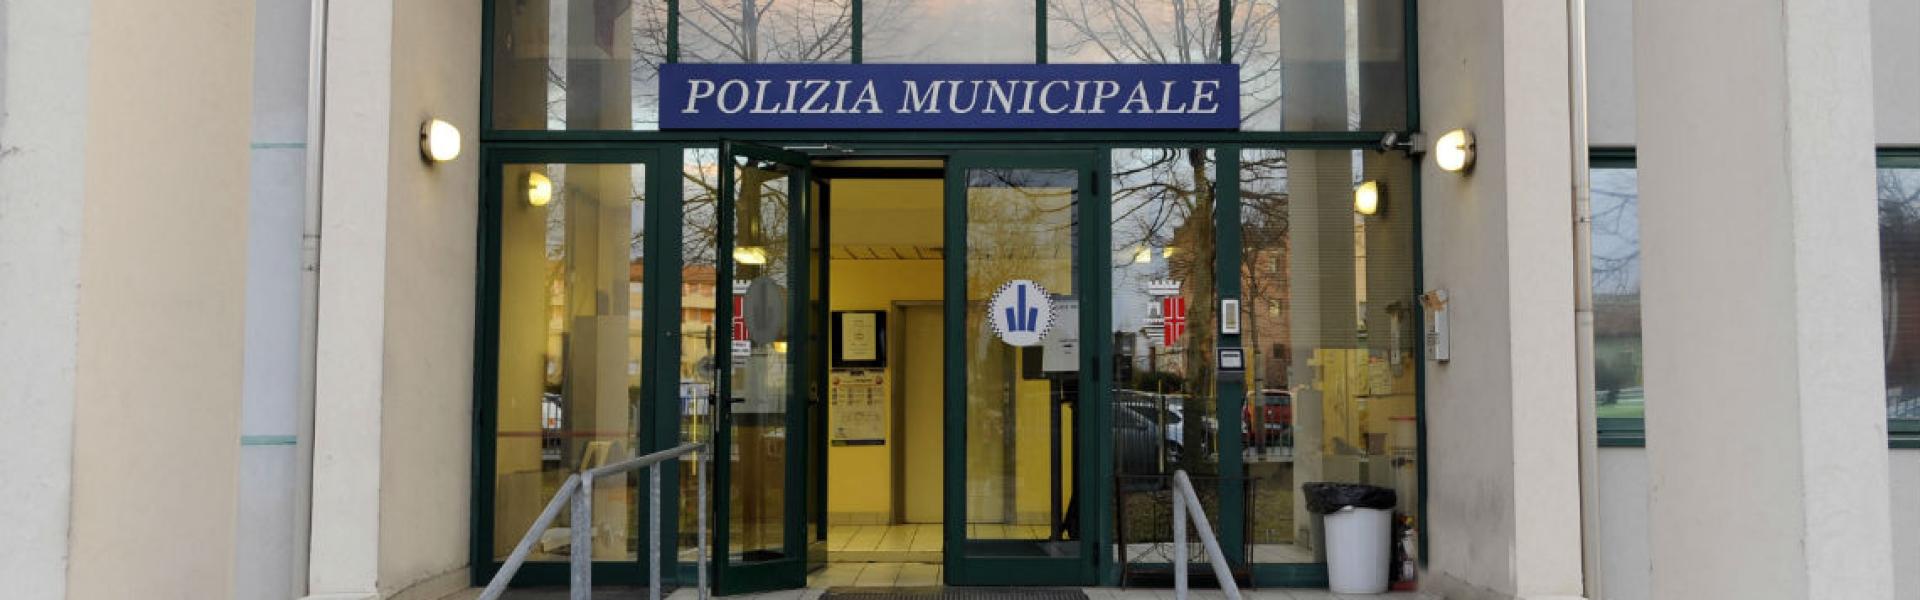 Ufficio Comando - Polizia Municipale di Rimini